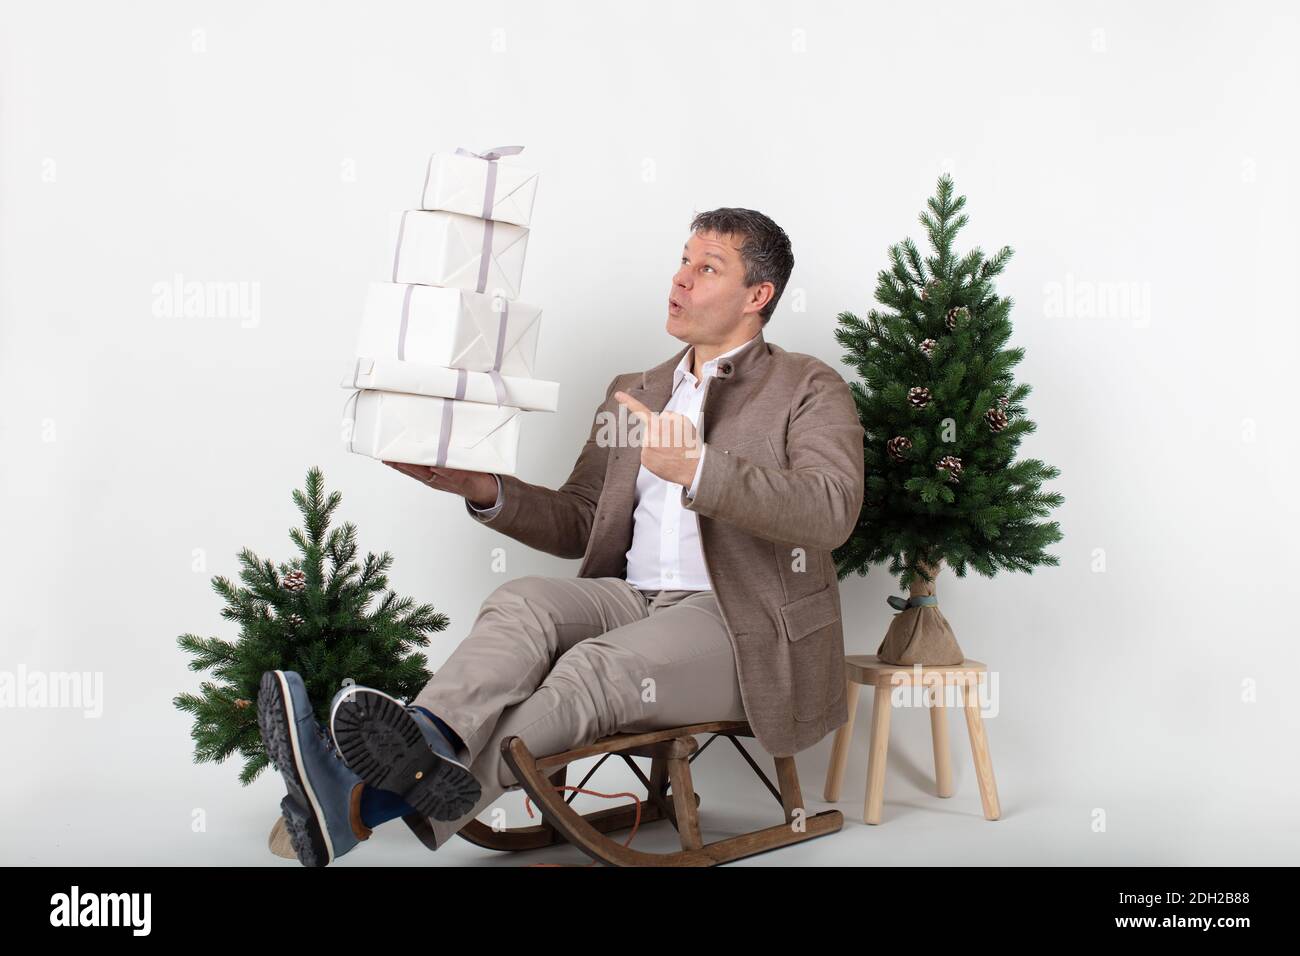 Weihnachten thematisierte horizontale Business-Porträt eines eleganten lässig gekleideten männlichen Executive sitzt auf einem Schlitten Jonglieren weiß verpackt Geschenkboxen alle auf einem weißen Hintergrund gesetzt. Stockfoto